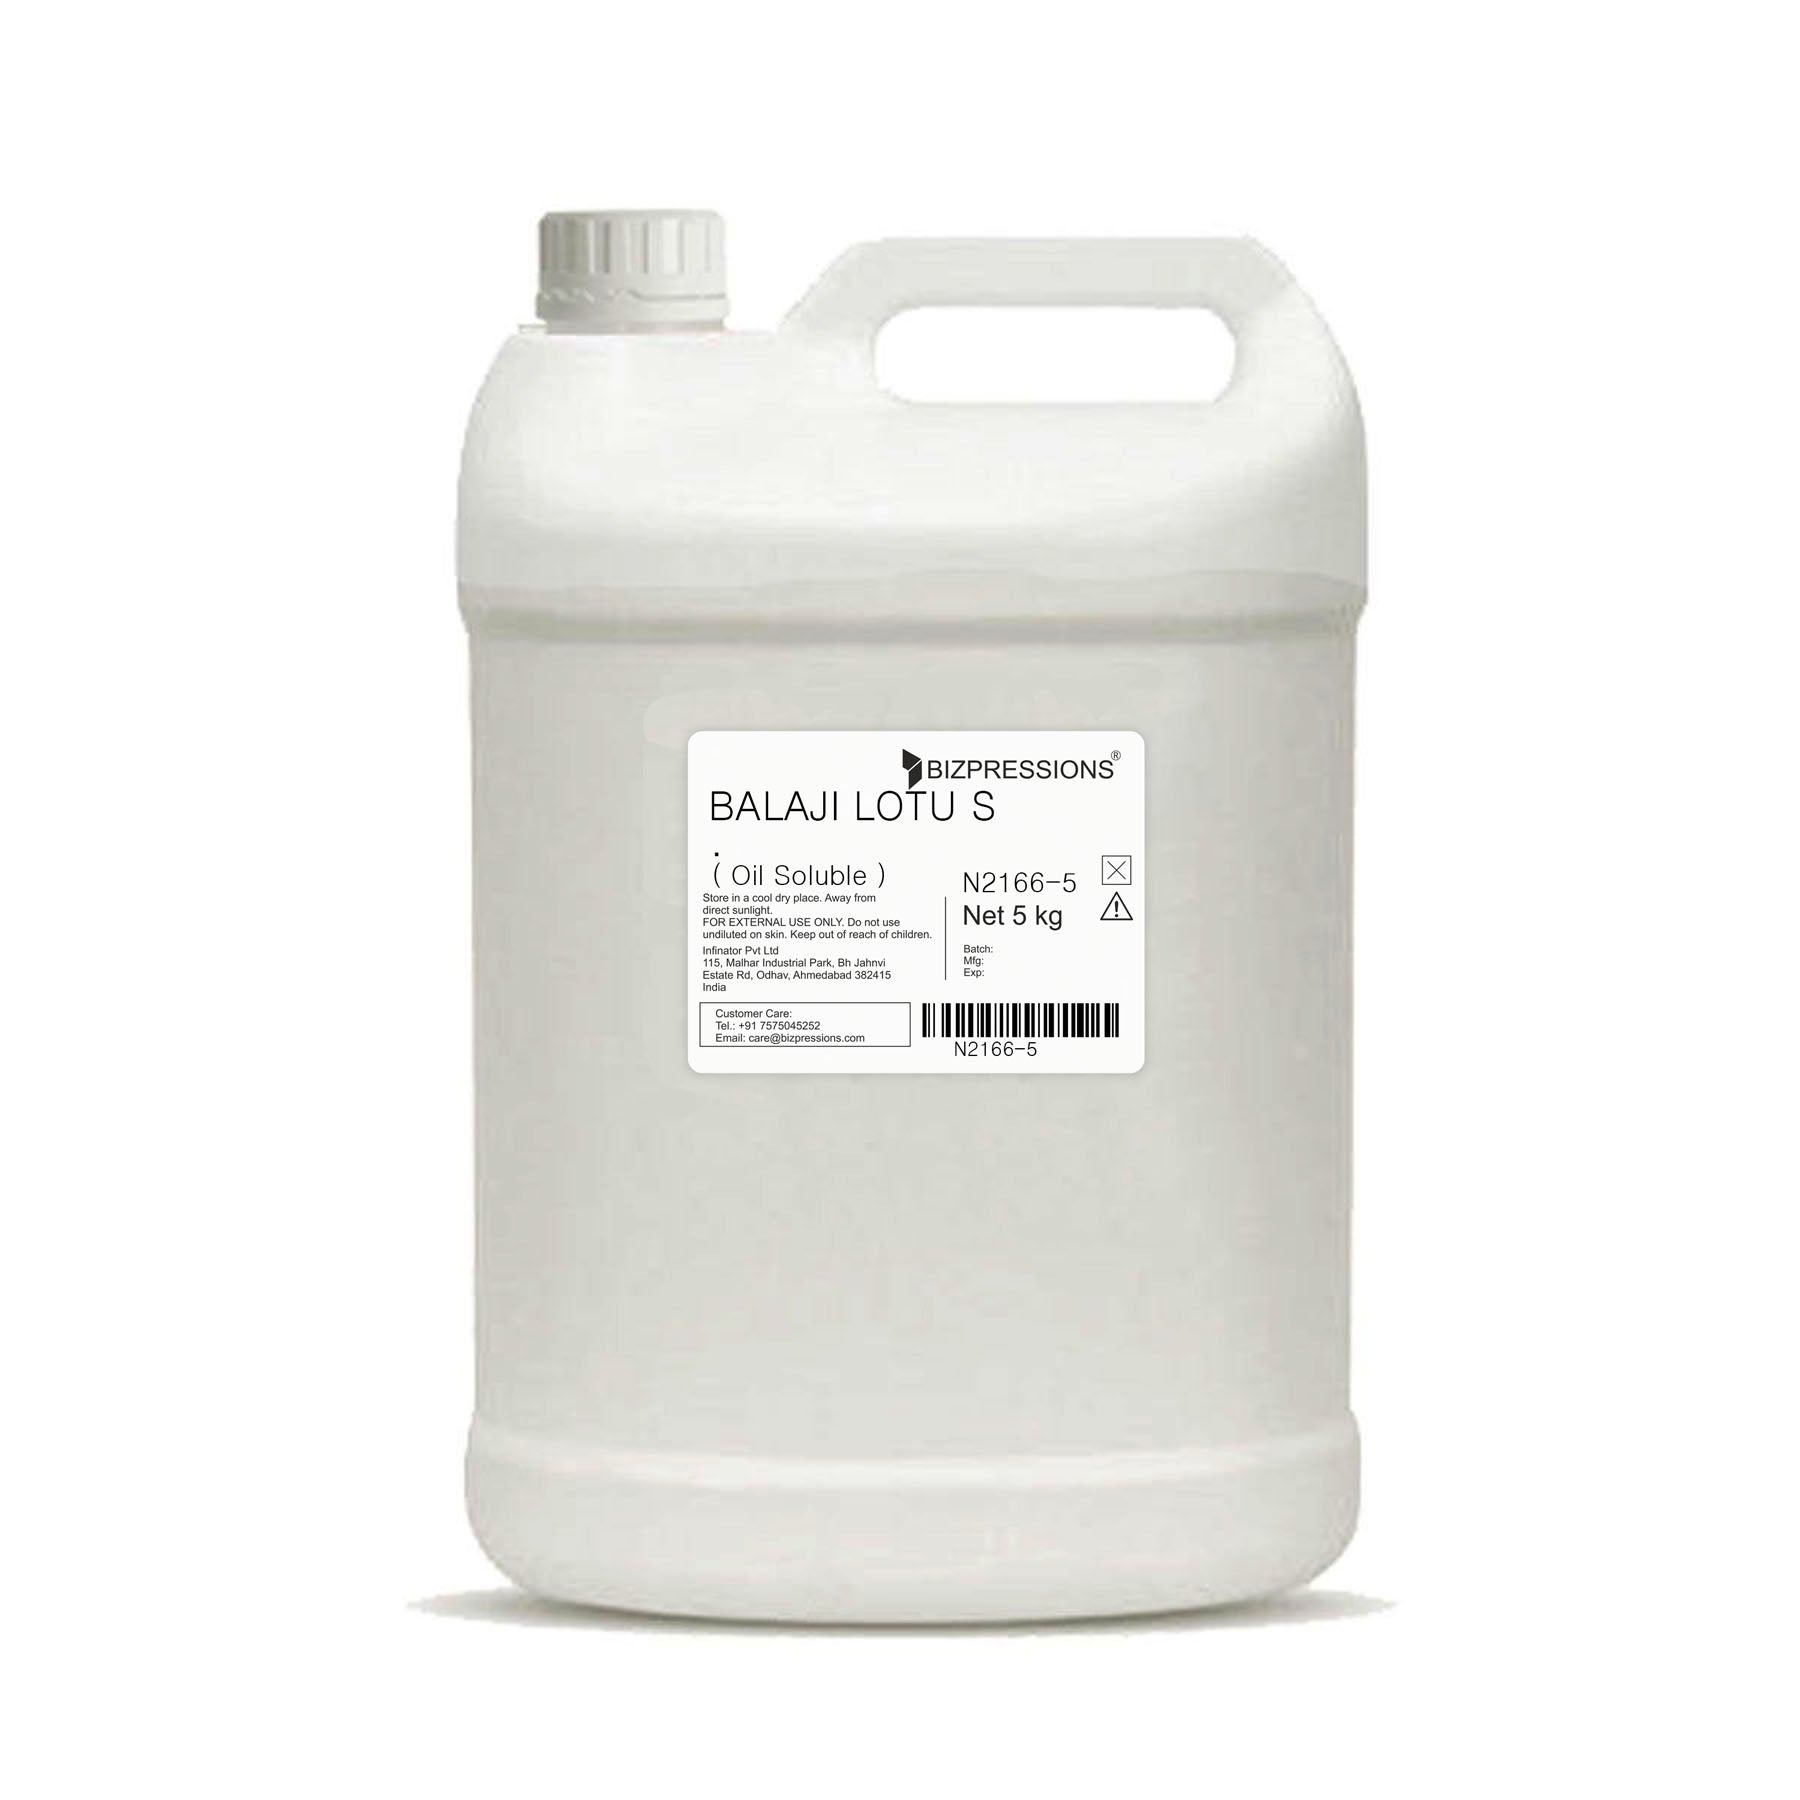 BALAJI LOTUS - Fragrance ( Oil Soluble ) - 5 kg